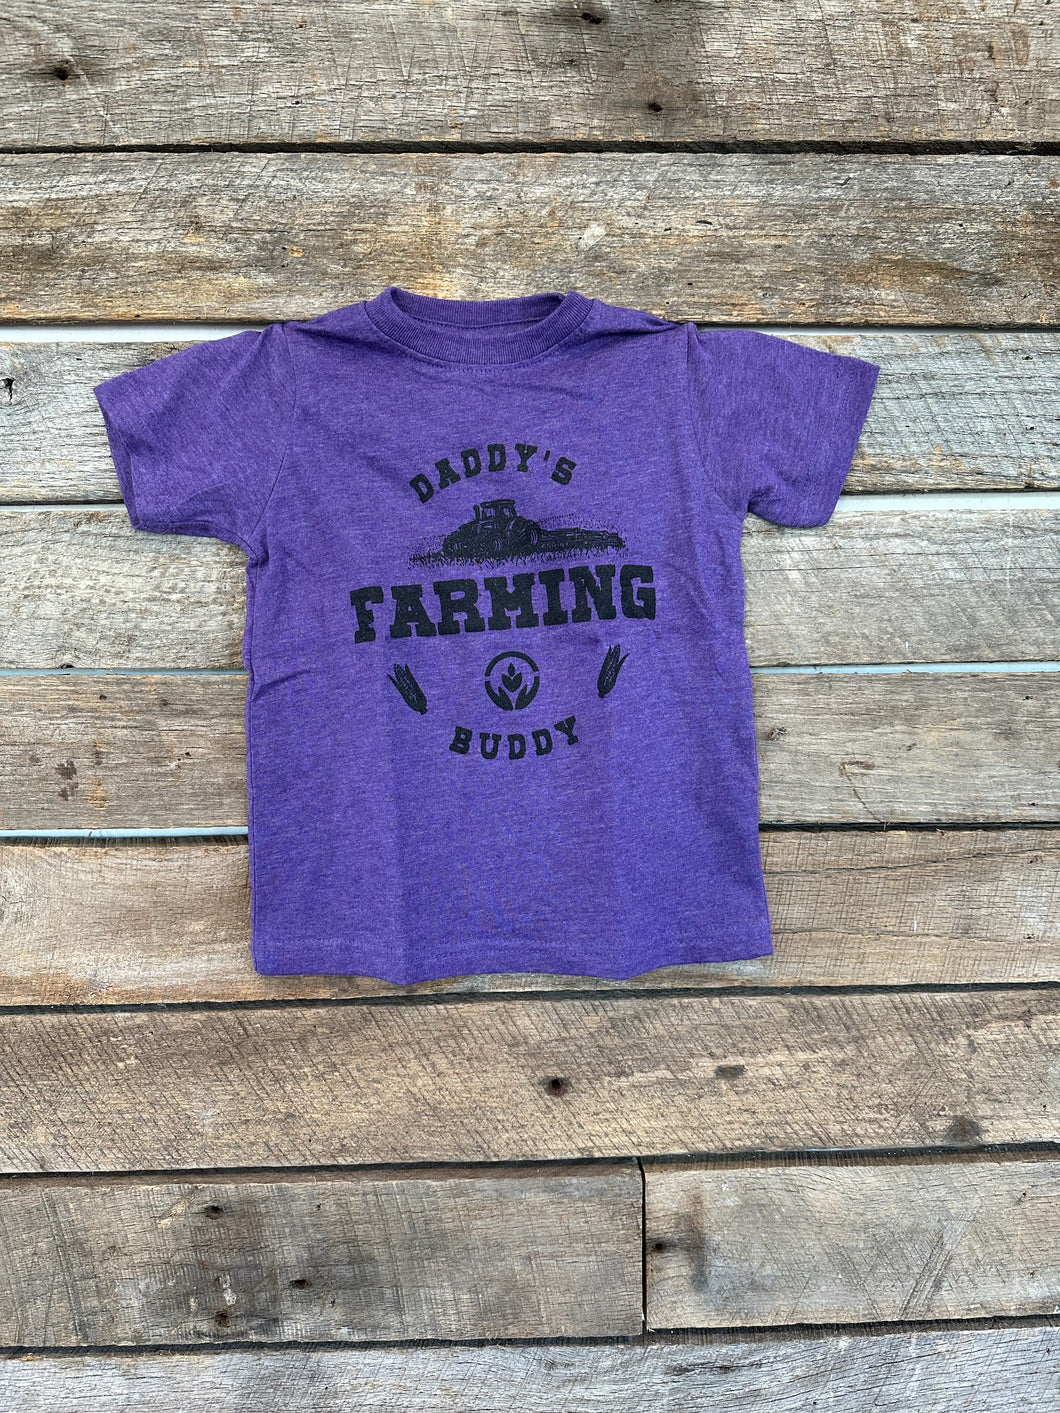 Daddy’s Farming Buddy T Shirt